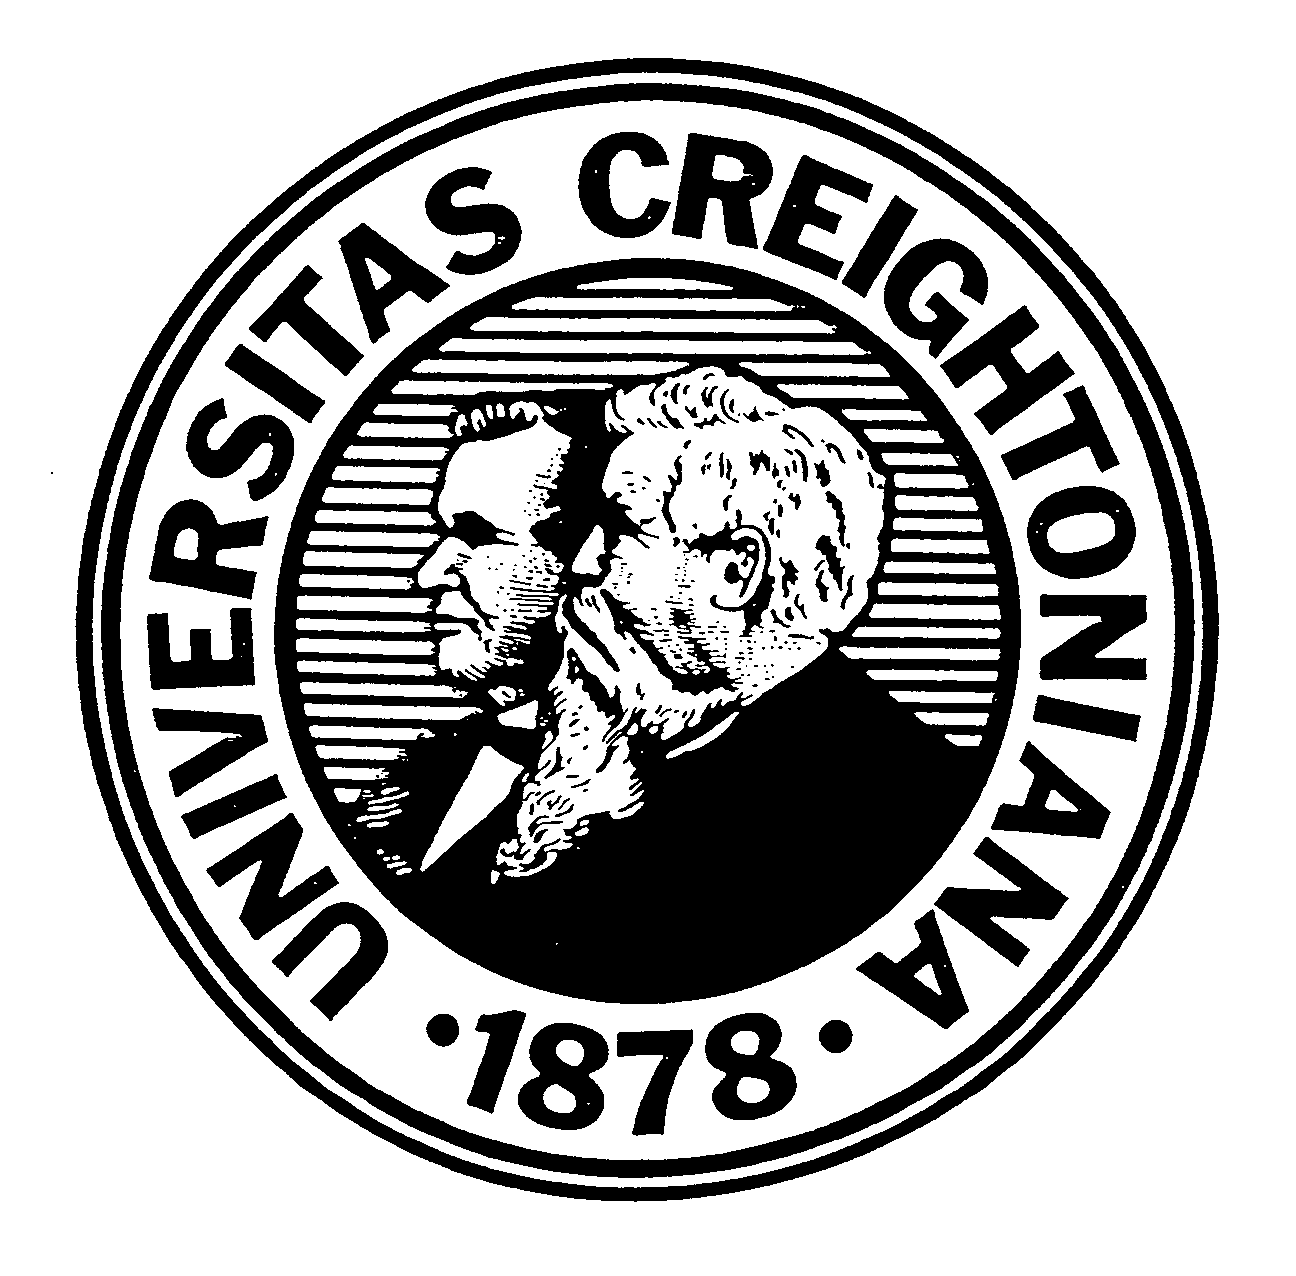  UNIVERSITAS CREIGHTONIANA 1878